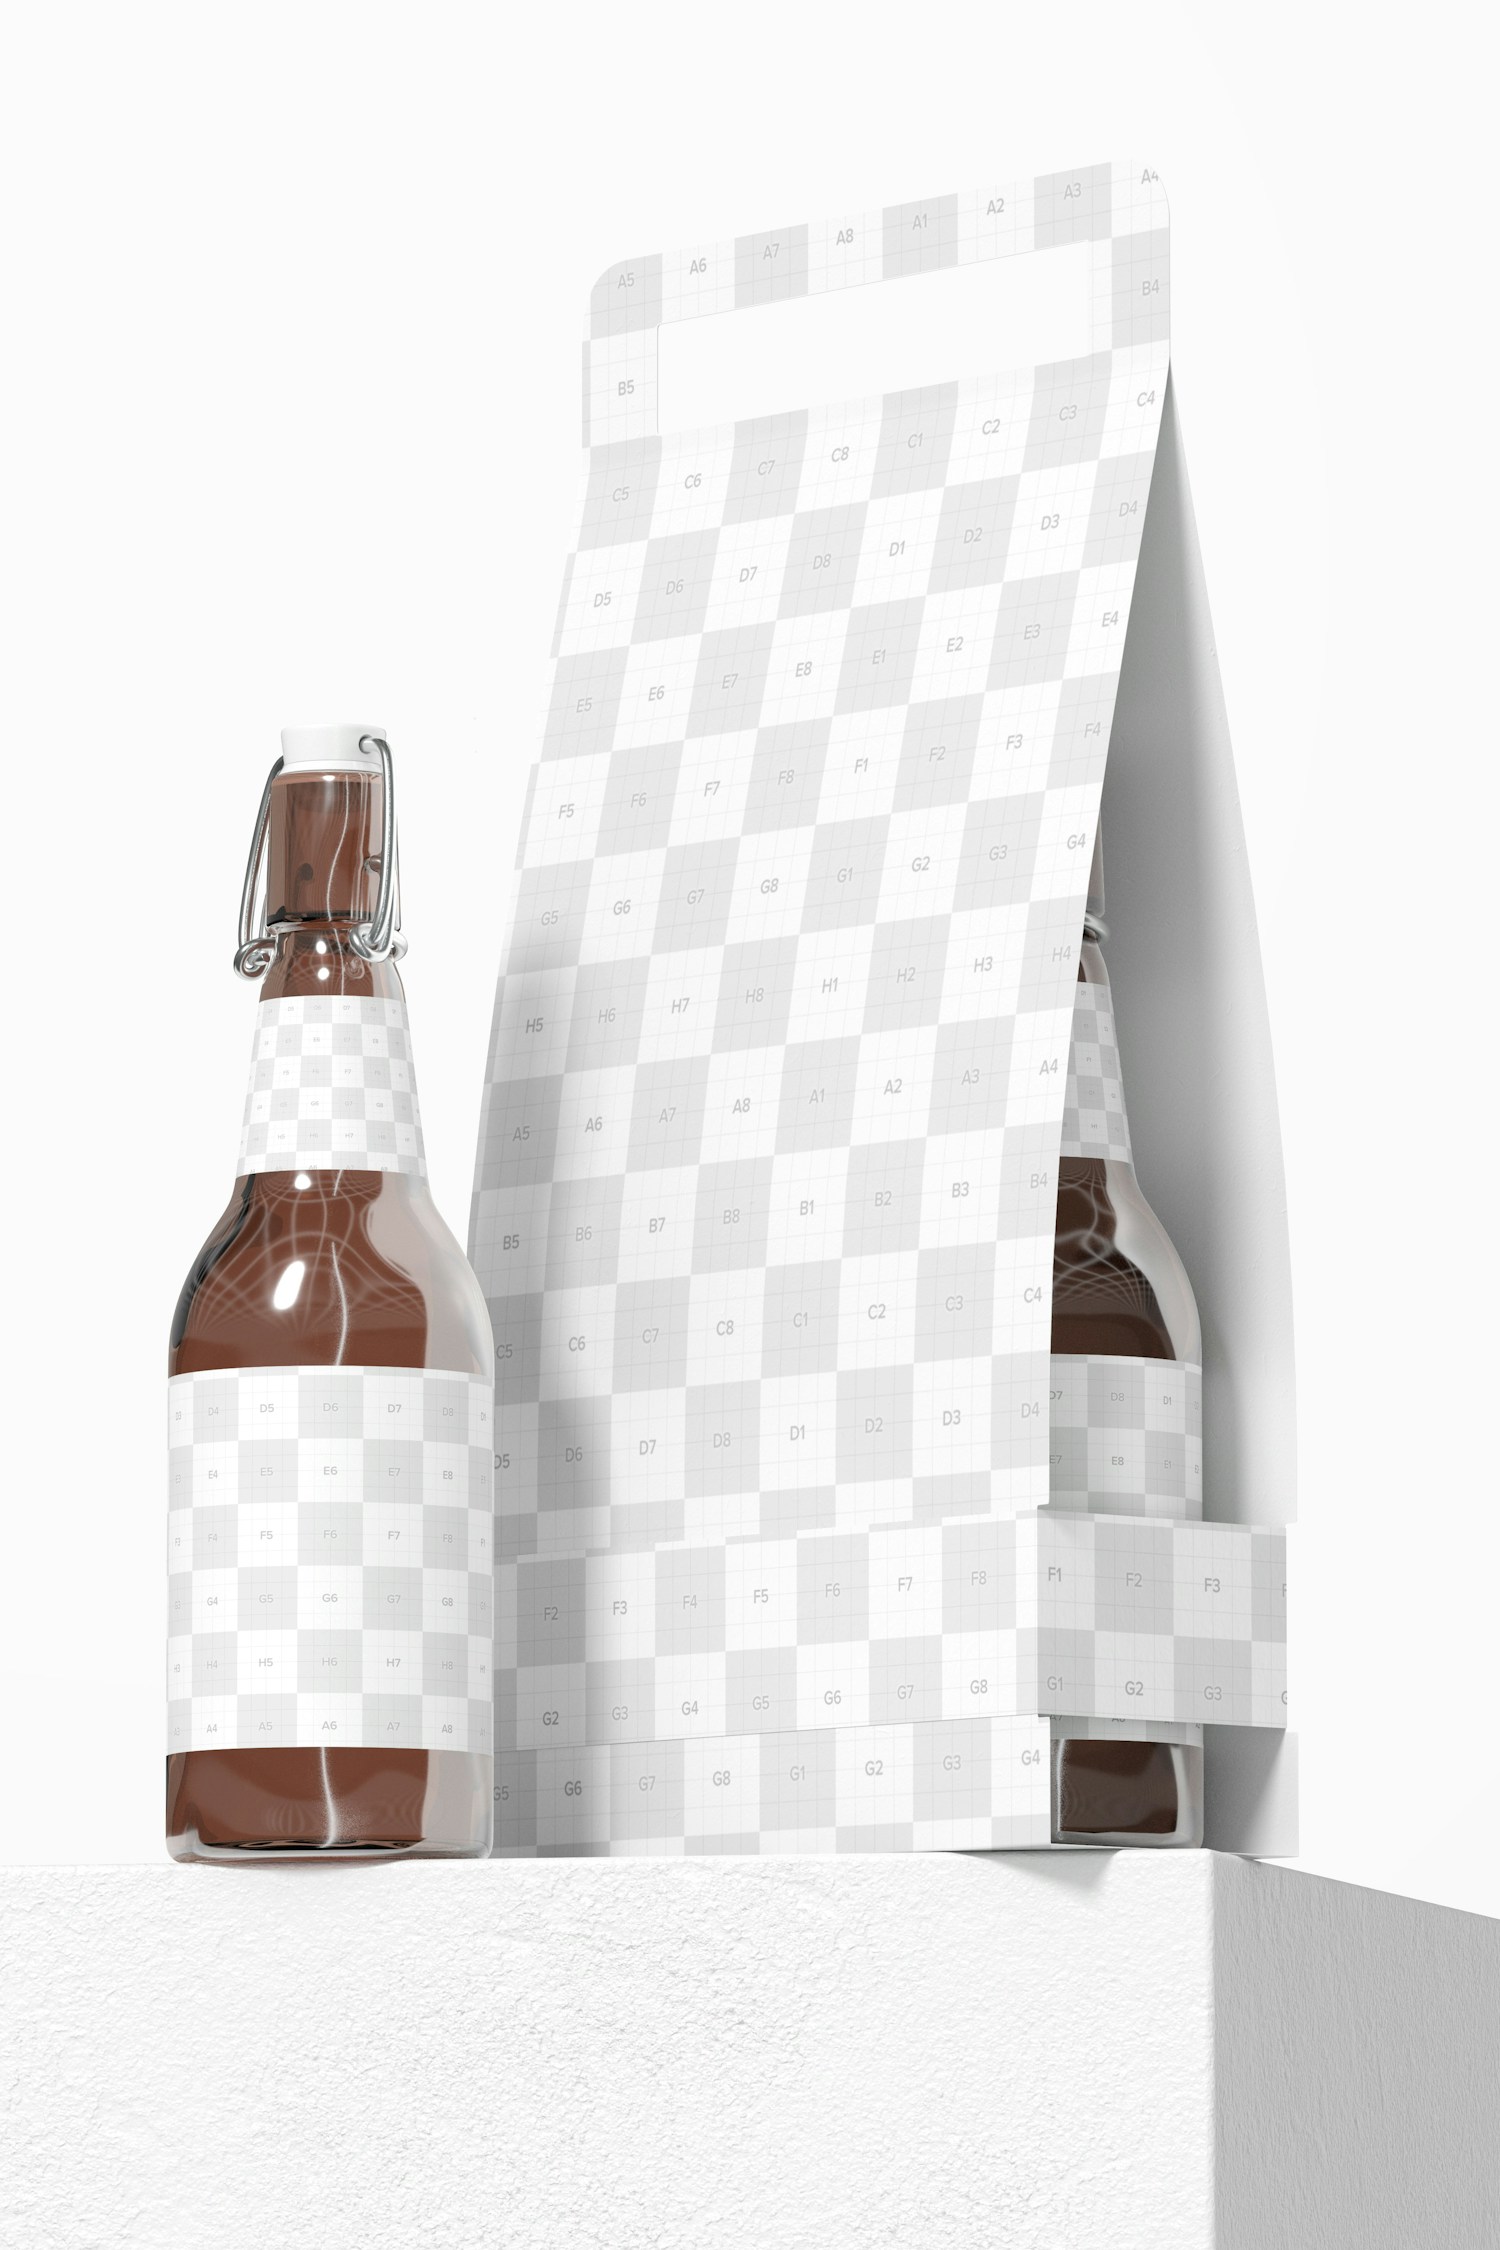 2 Pack Paper Bottle Holder Mockup, Front View